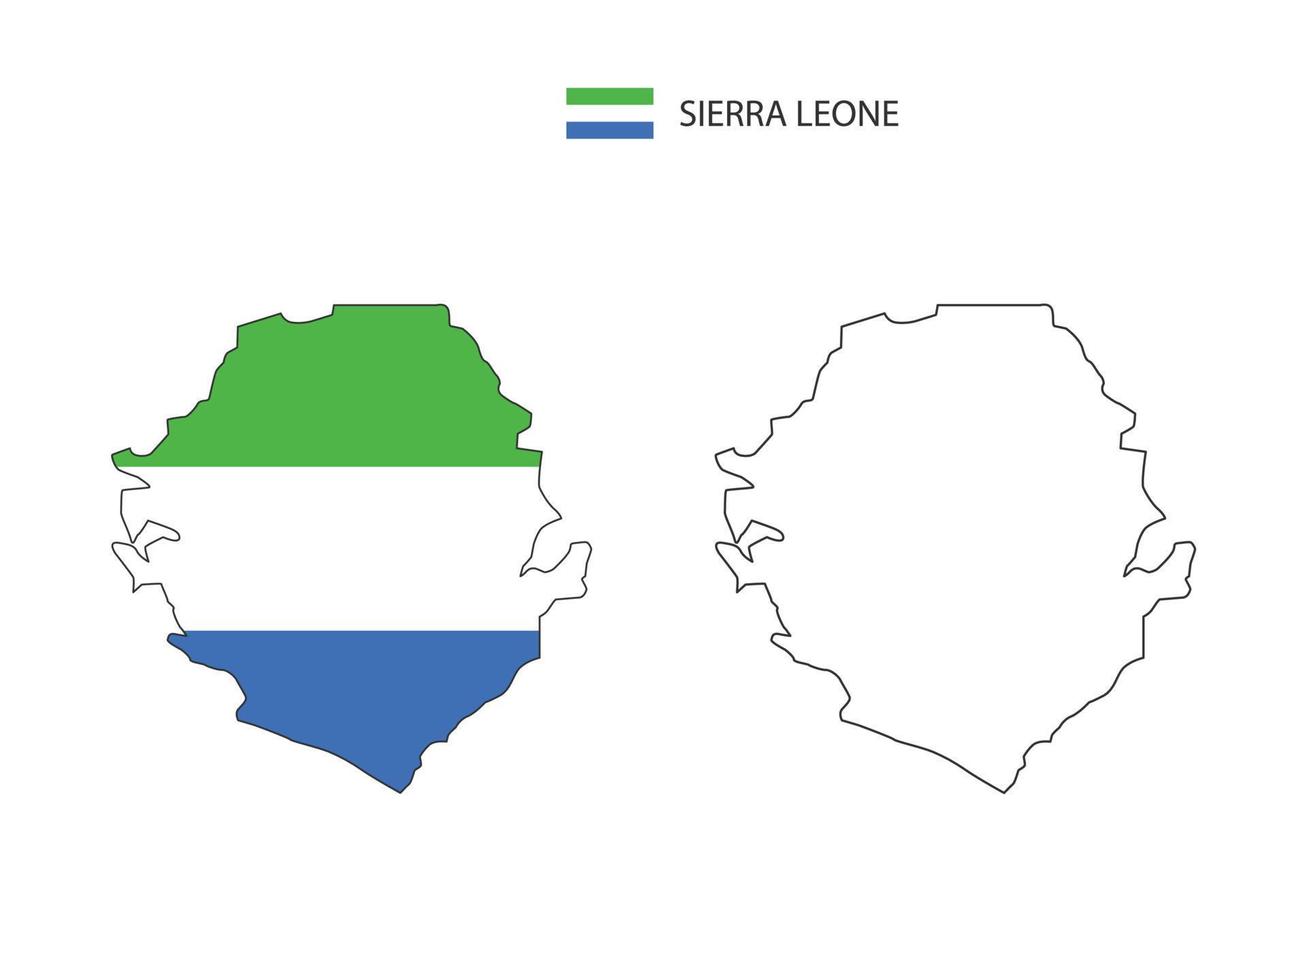 sierra leone carte ville vecteur divisé par style de simplicité de contour. ont 2 versions, la version en ligne fine noire et la couleur de la version du drapeau du pays. les deux cartes étaient sur fond blanc.